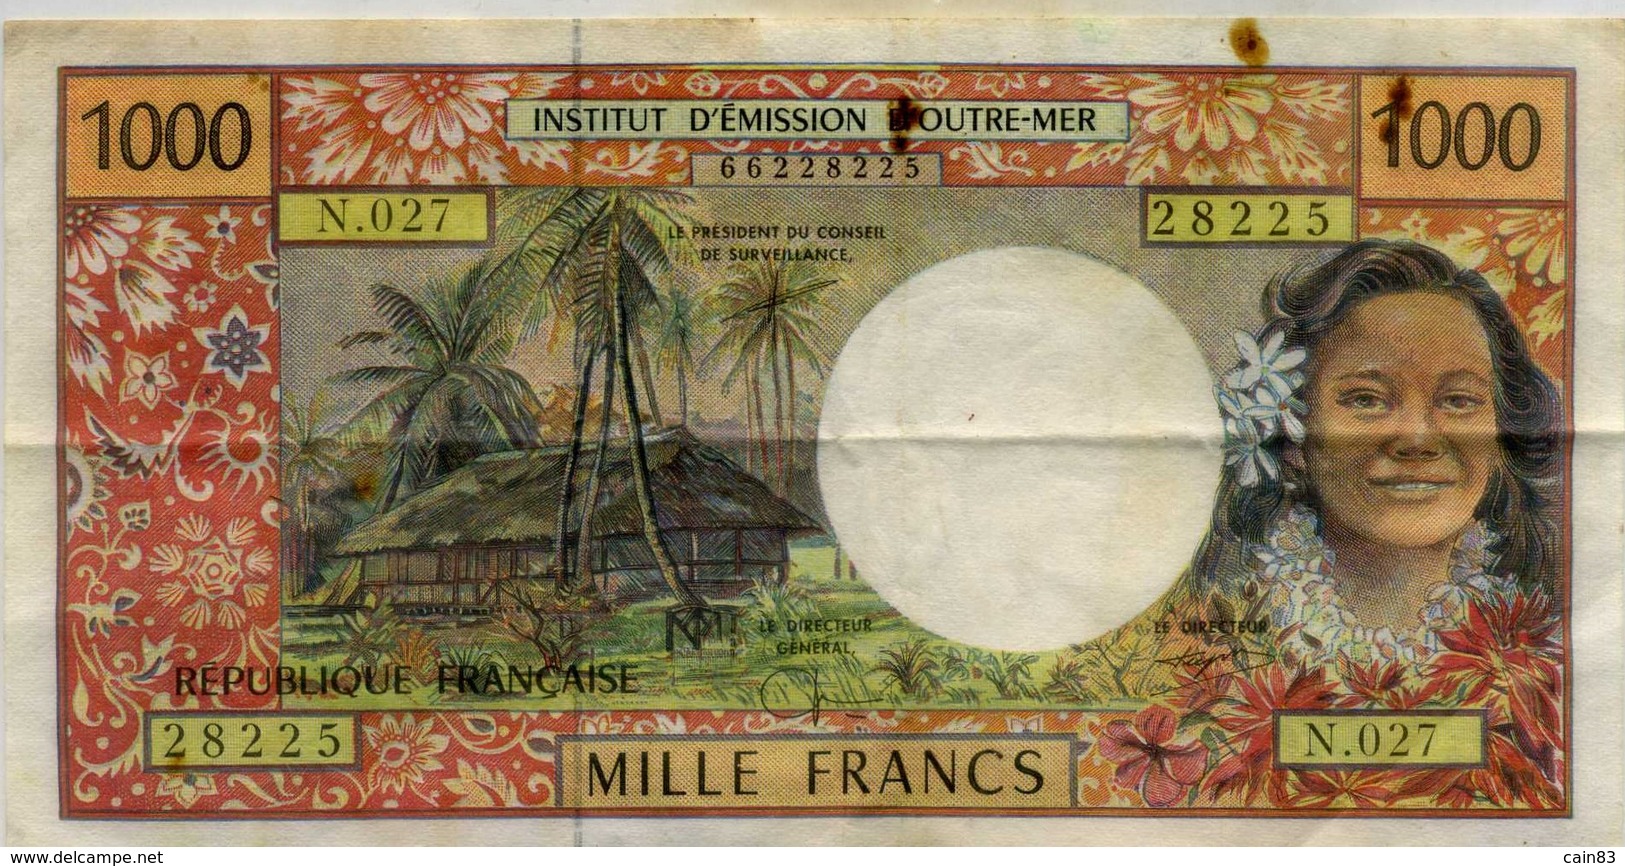 Billet De 1000 Francs ,émission D Outre Mer PAPEETE - Papeete (French Polynesia 1914-1985)